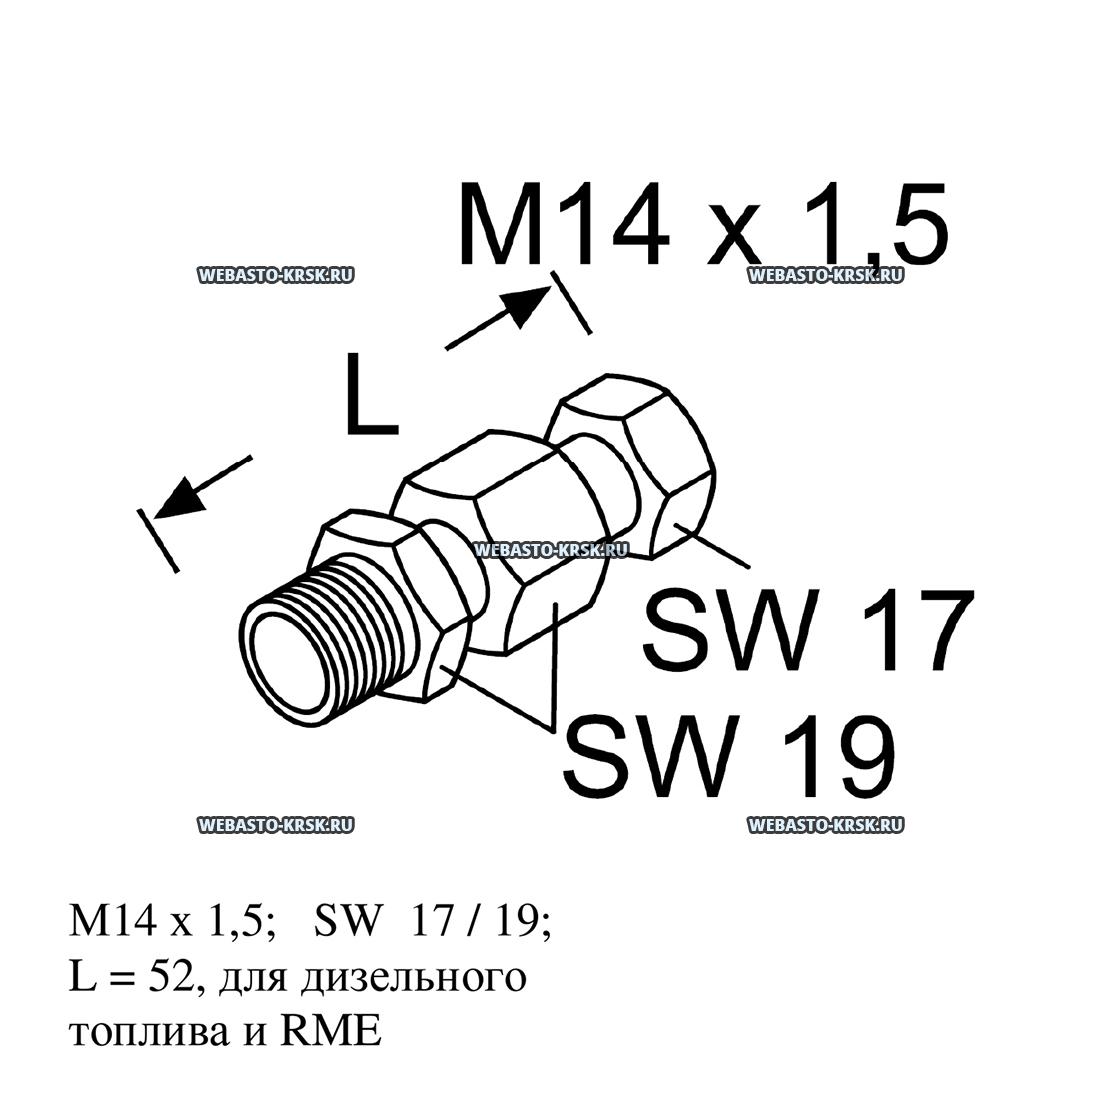    M14x1,5 /  | : 65063C